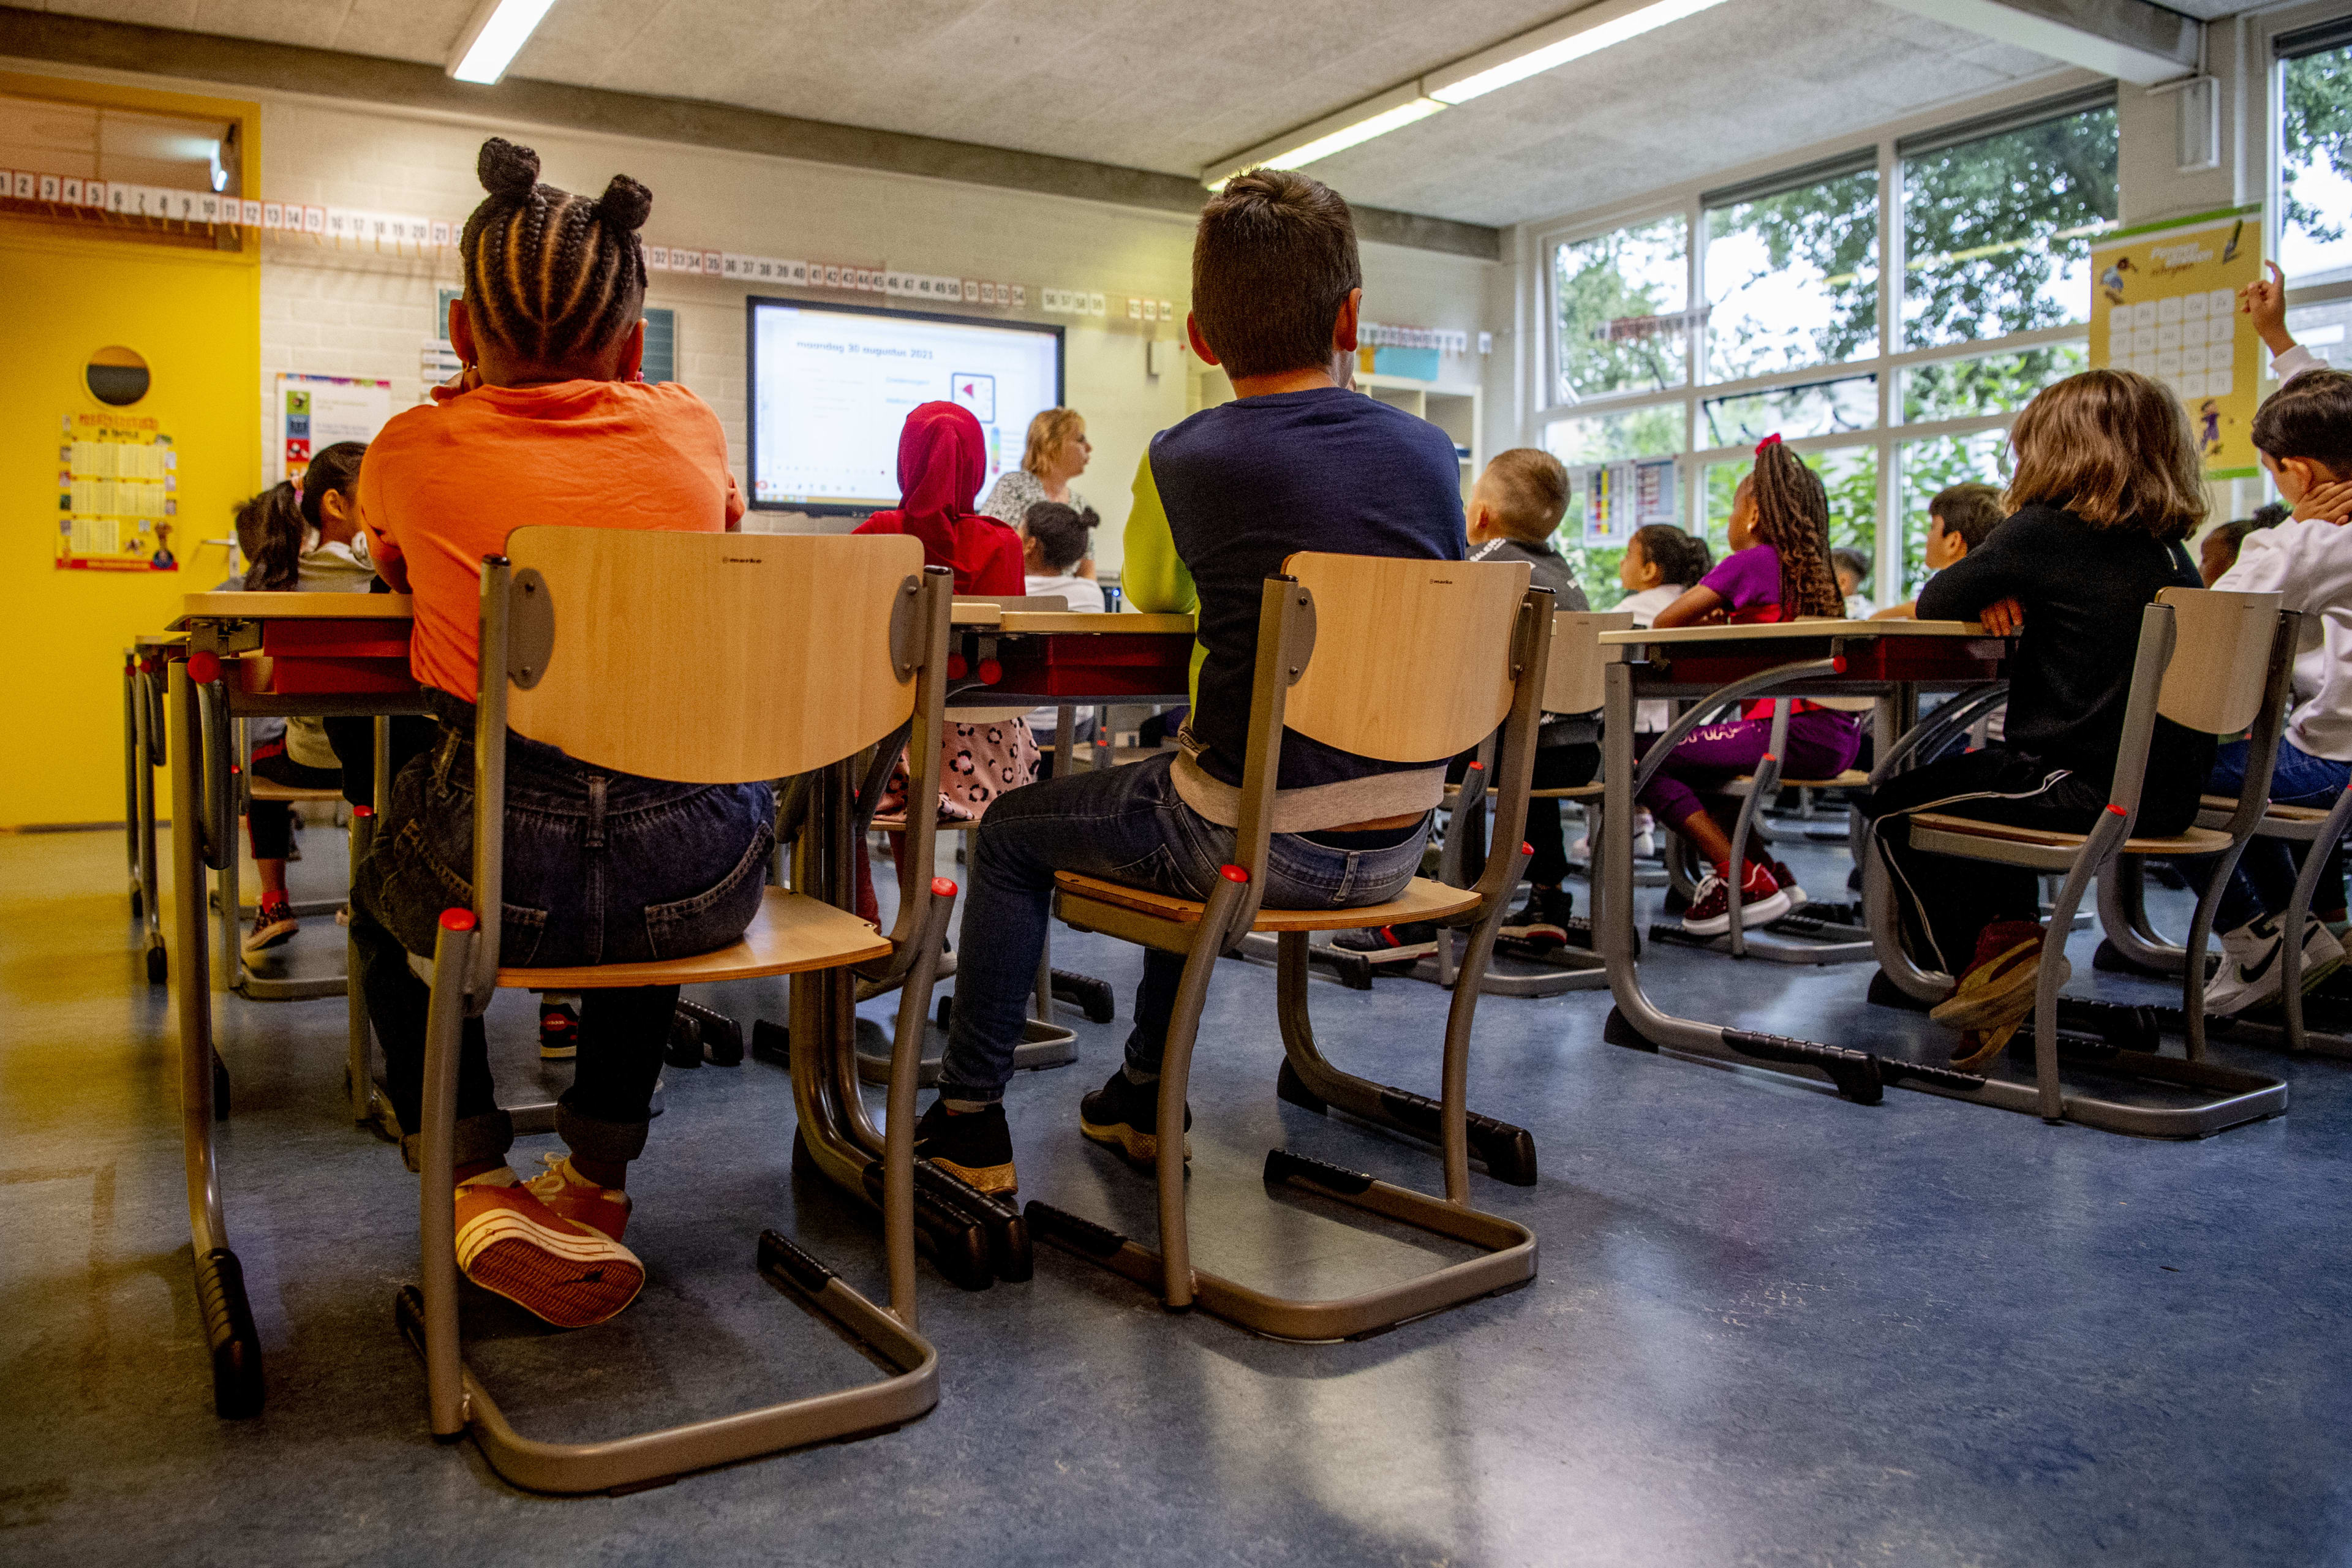 Stuk beton valt uit plafond op tafel in klaslokaal, onderzoek naar honderden schoolvloeren